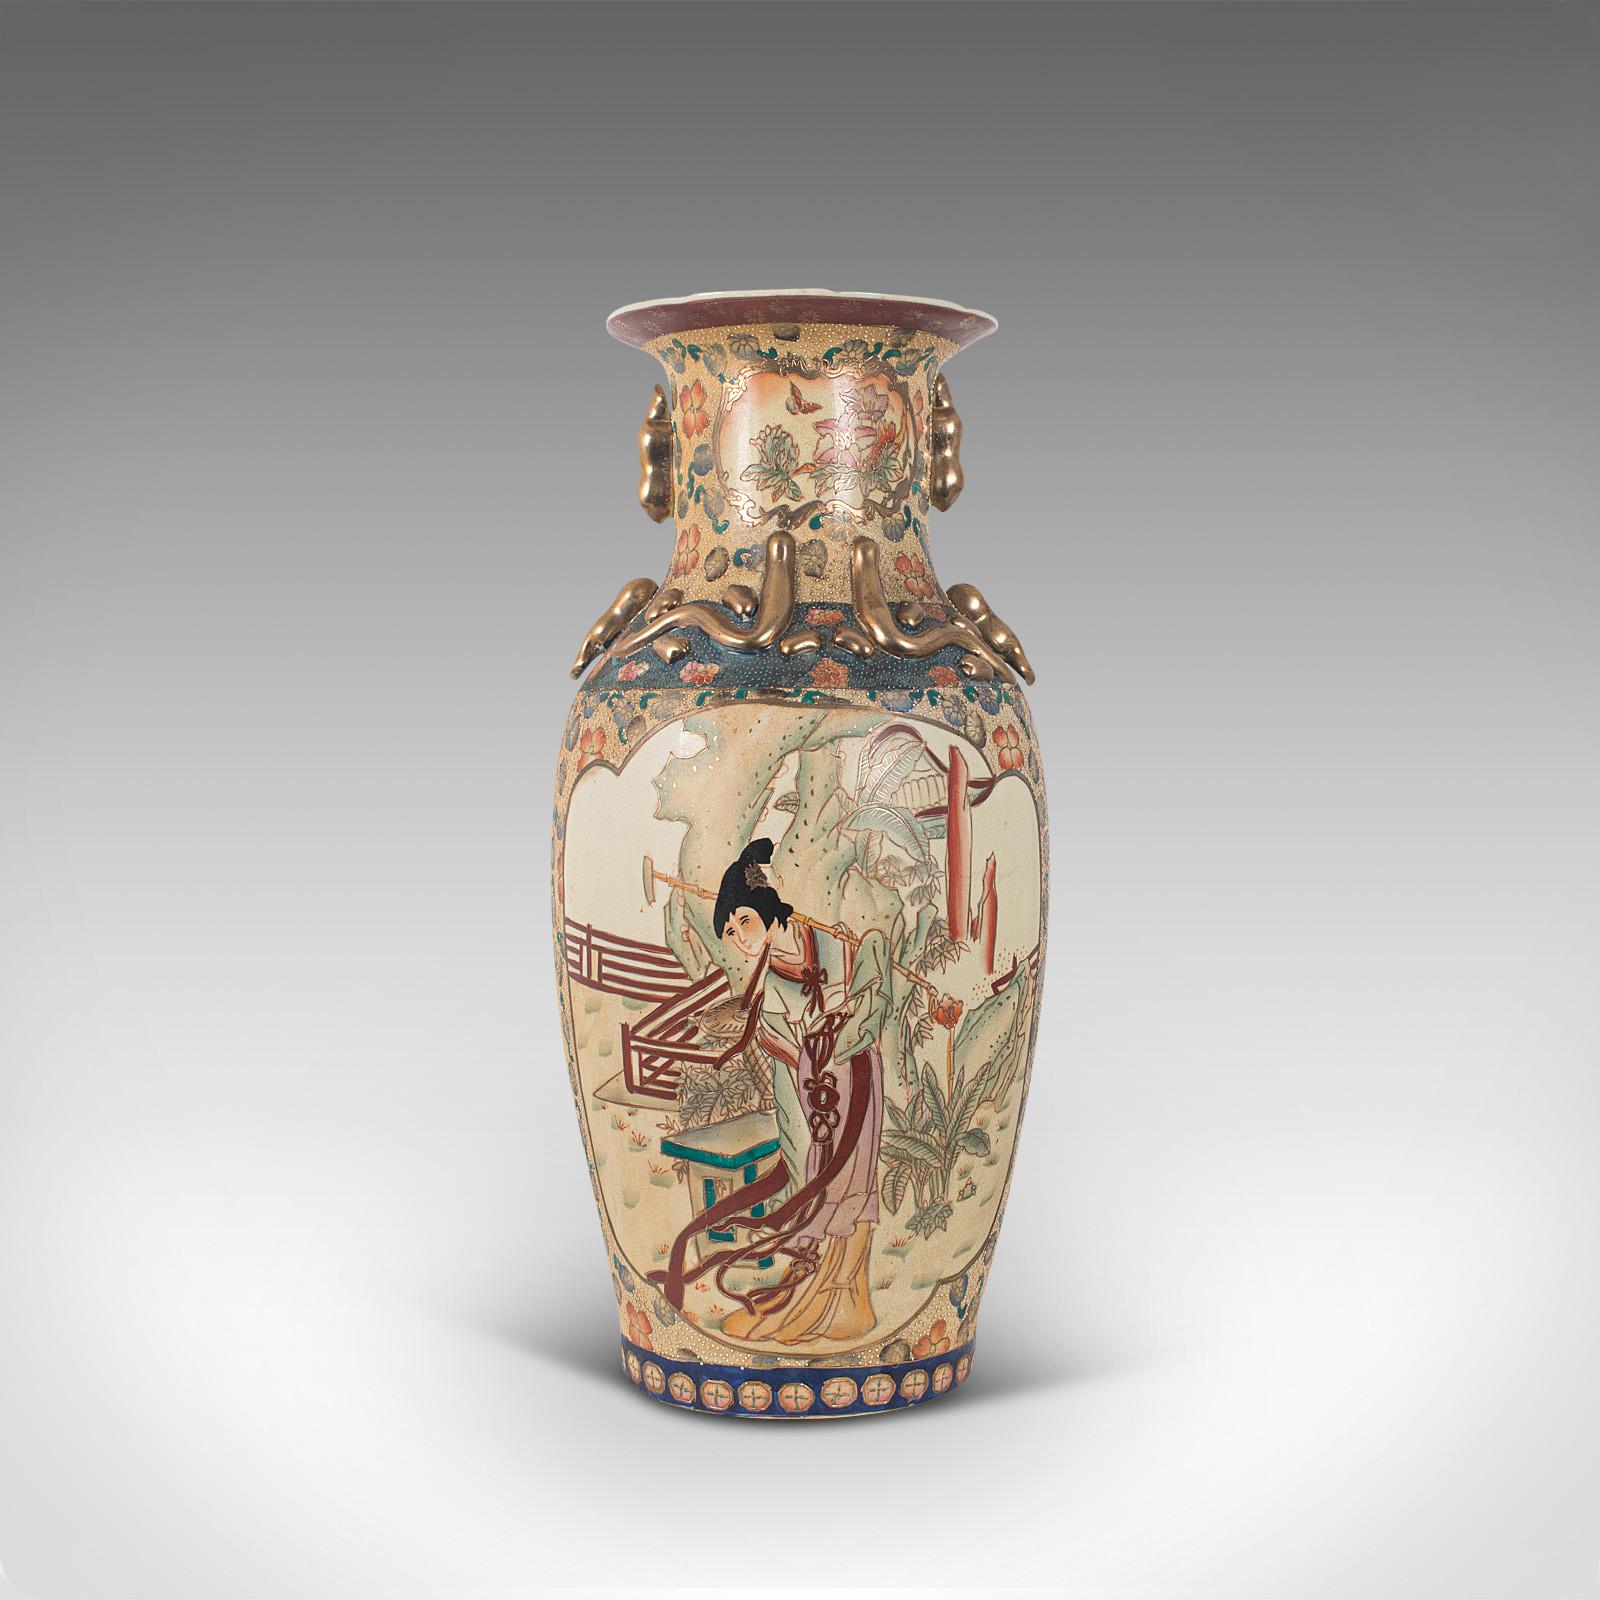 Il s'agit d'un grand vase décoratif vintage. Une urne balustre orientale en céramique décorée de moriage, datant de la période Art déco, vers 1940.

Superbe forme avec de merveilleux détails d'époque
Présente une patine d'usage désirable avec une